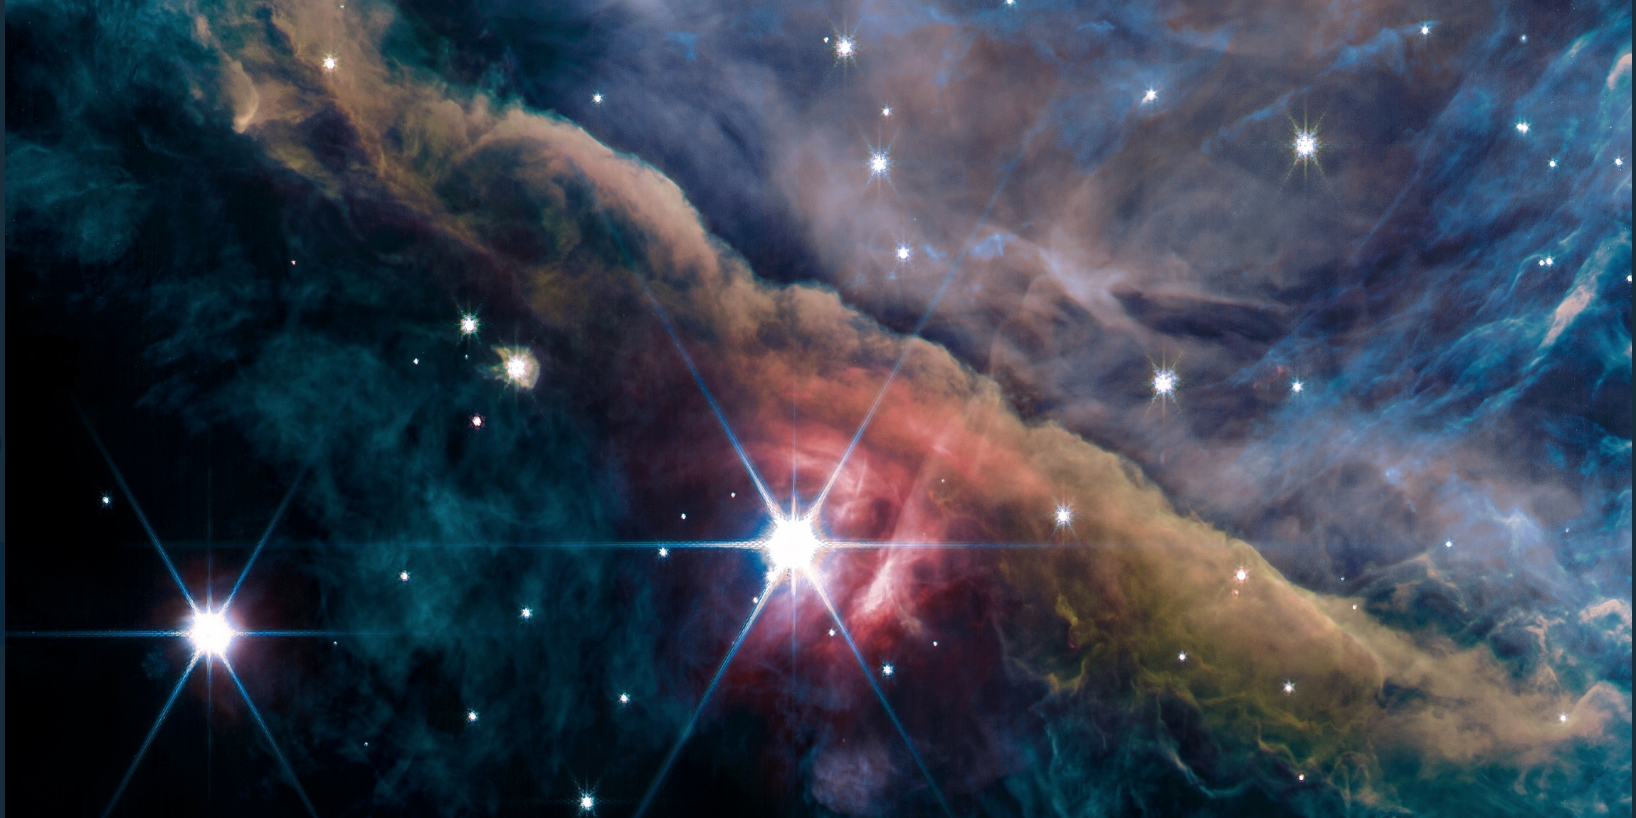 Le télescope James Webb livre de magnifiques images de la nébuleuse d'Orion